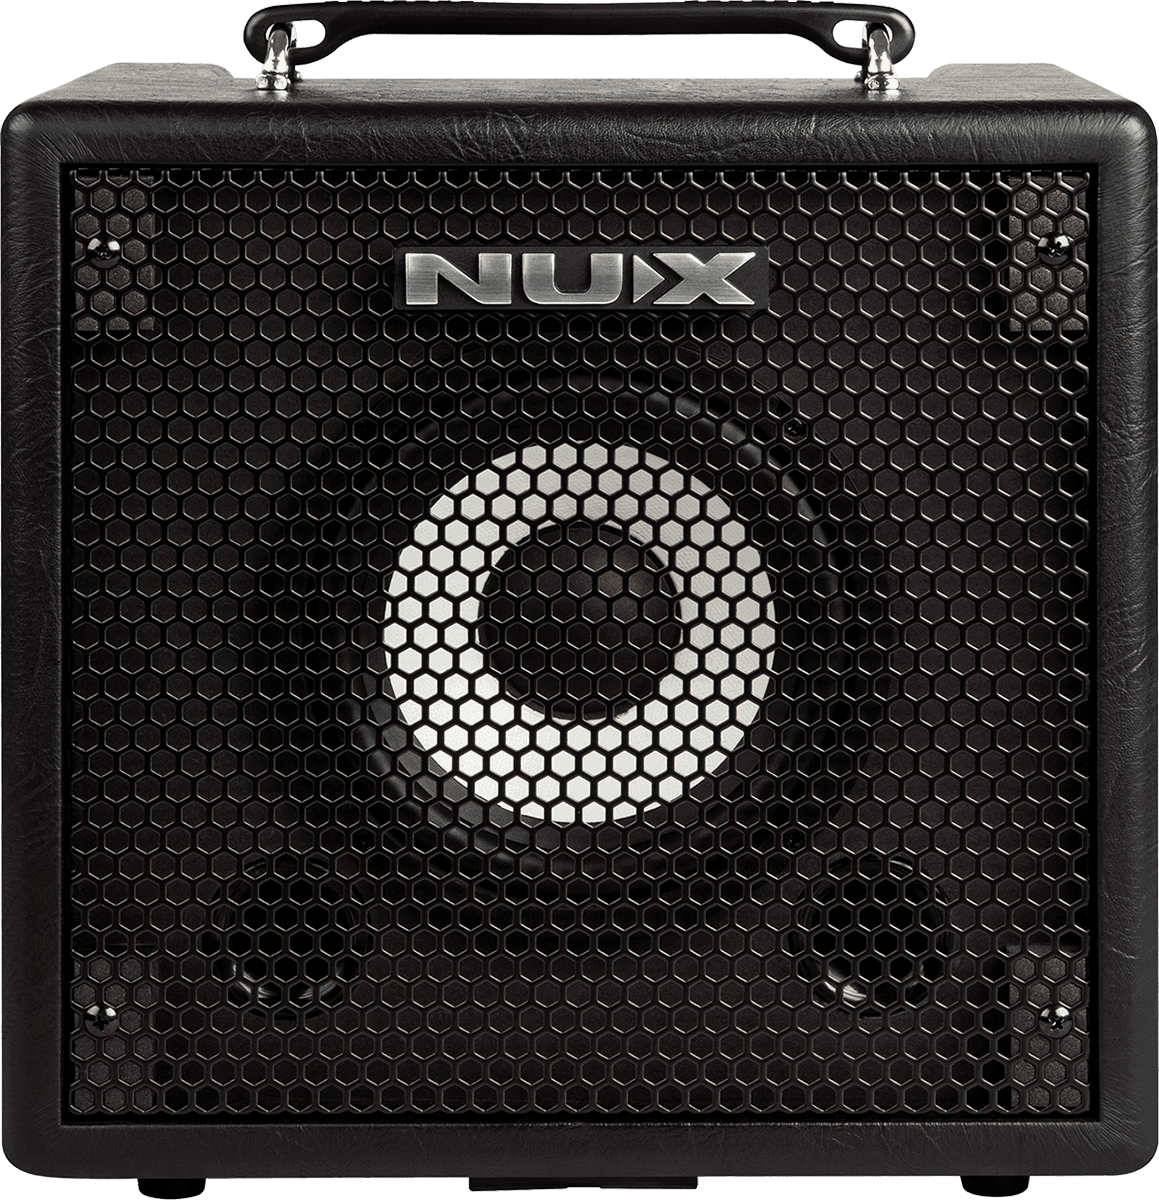 Nux Mightybass-50-bt - Combo amplificador para bajo - Variation 1